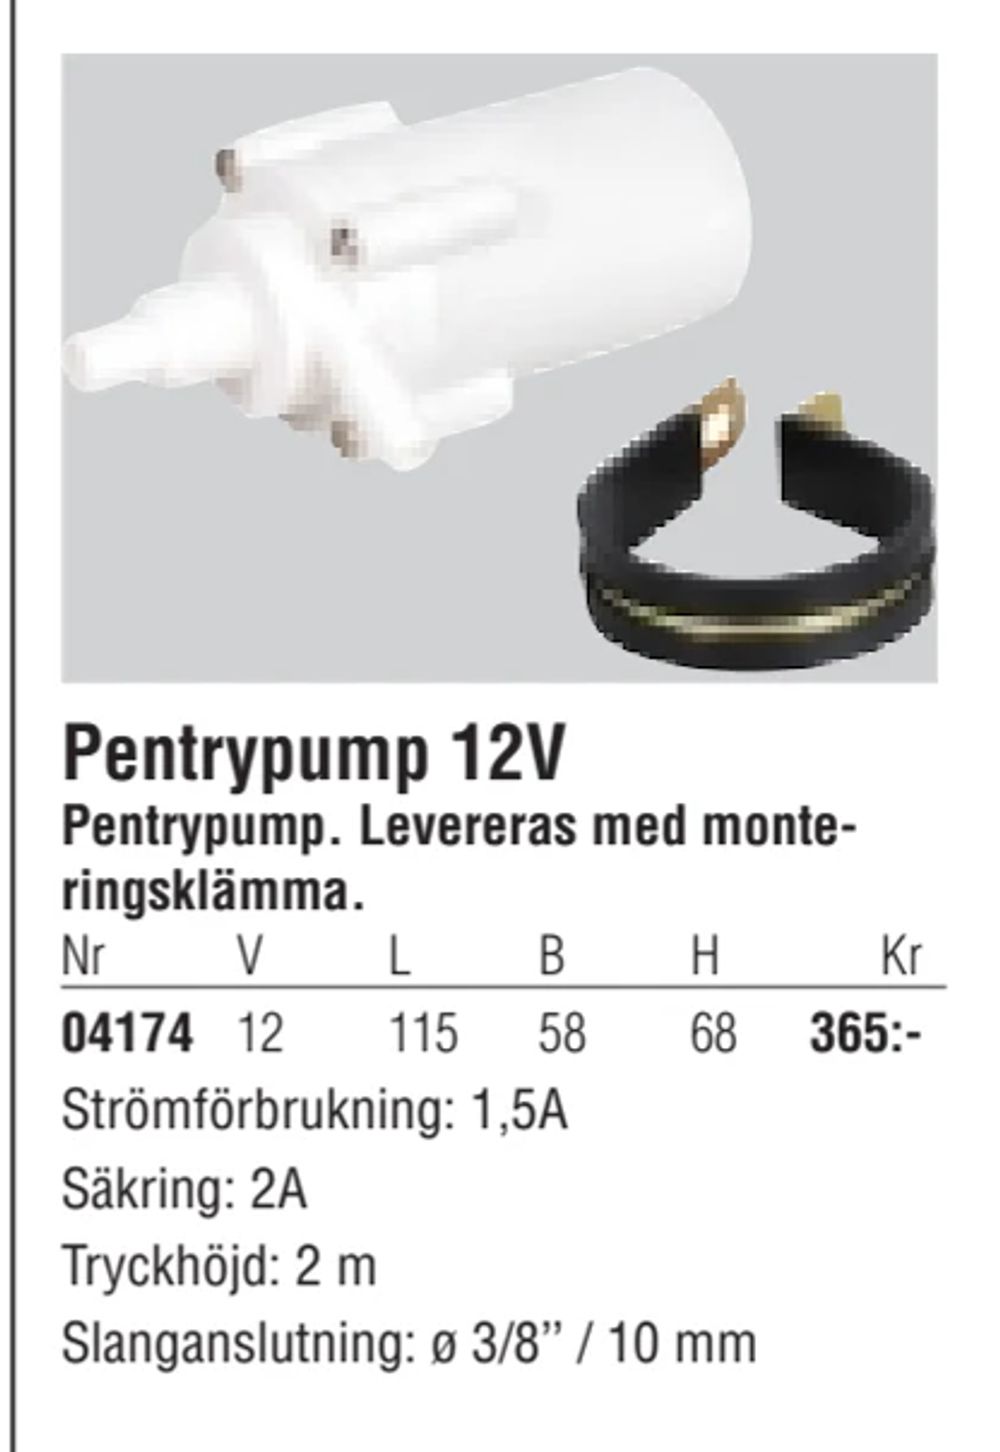 Erbjudanden på Pentrypump 12V från Erlandsons Brygga för 365 kr